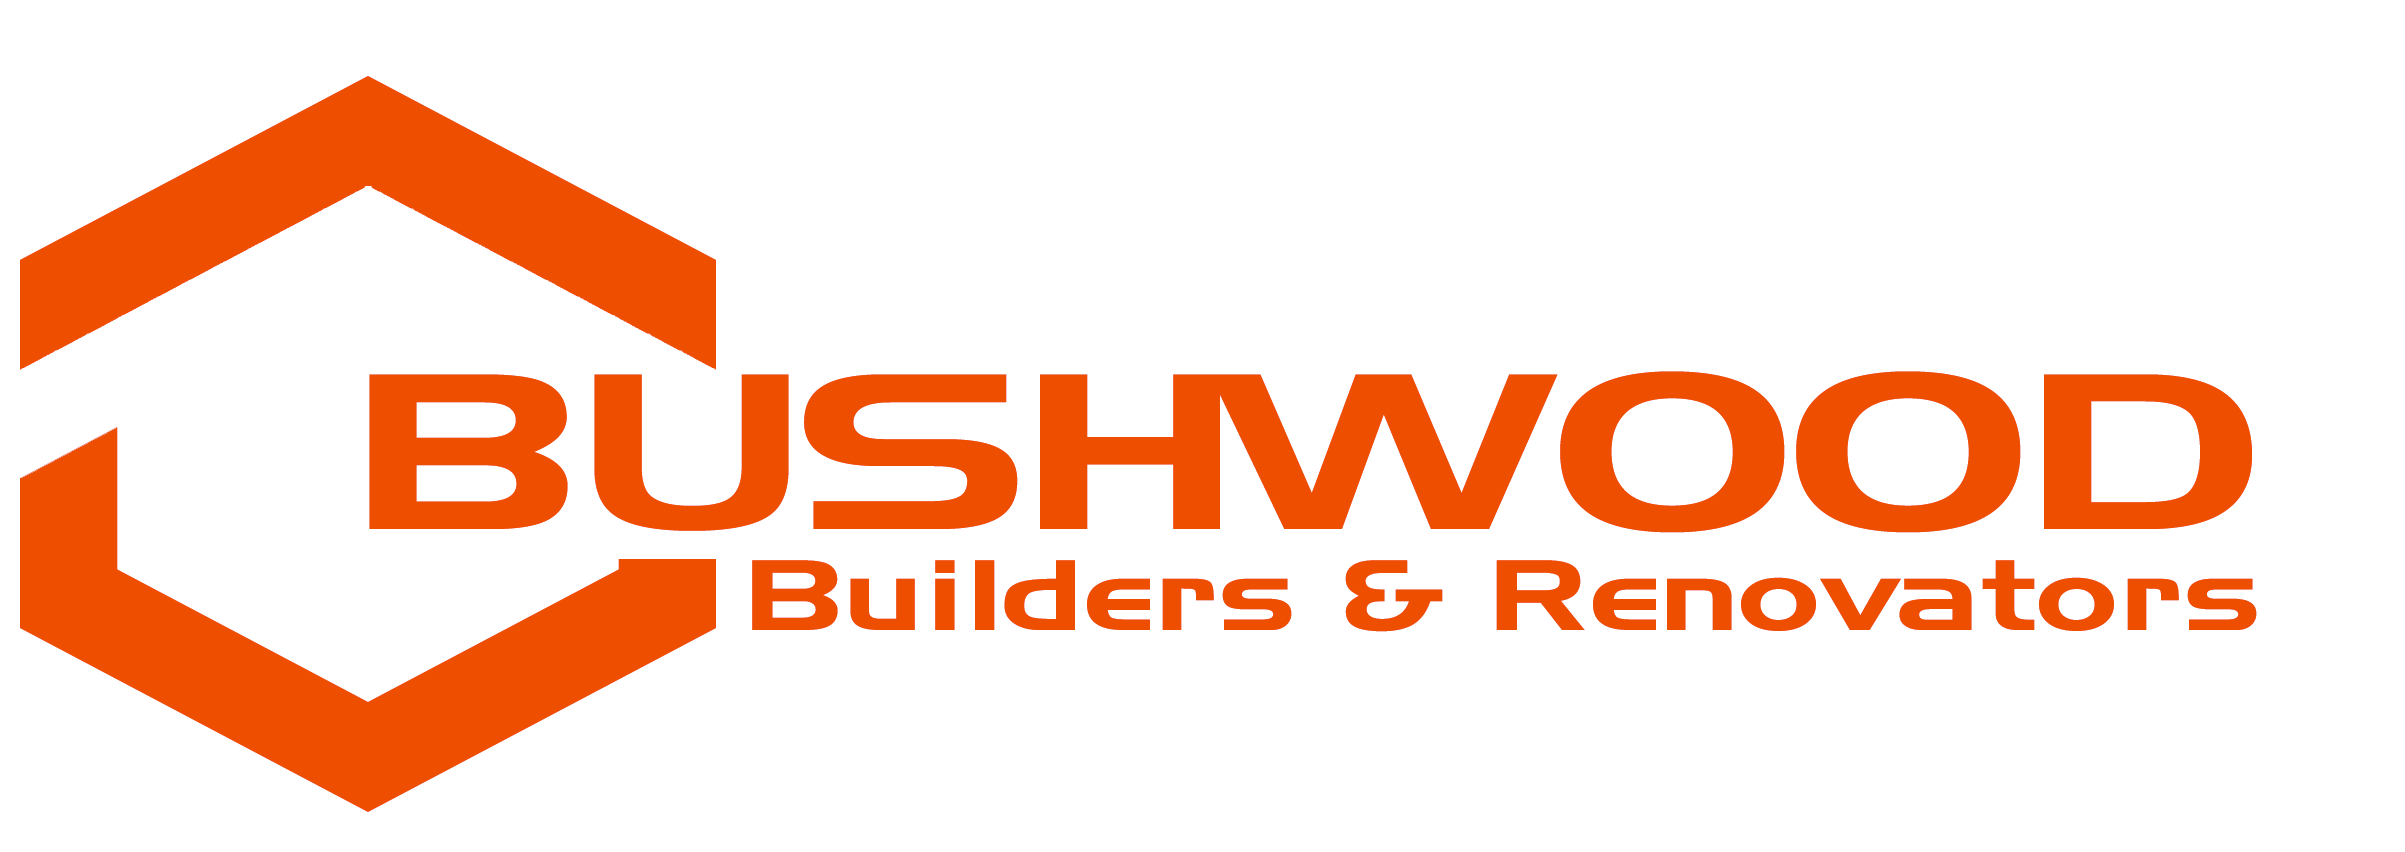 Bushwood Builders & Renovators